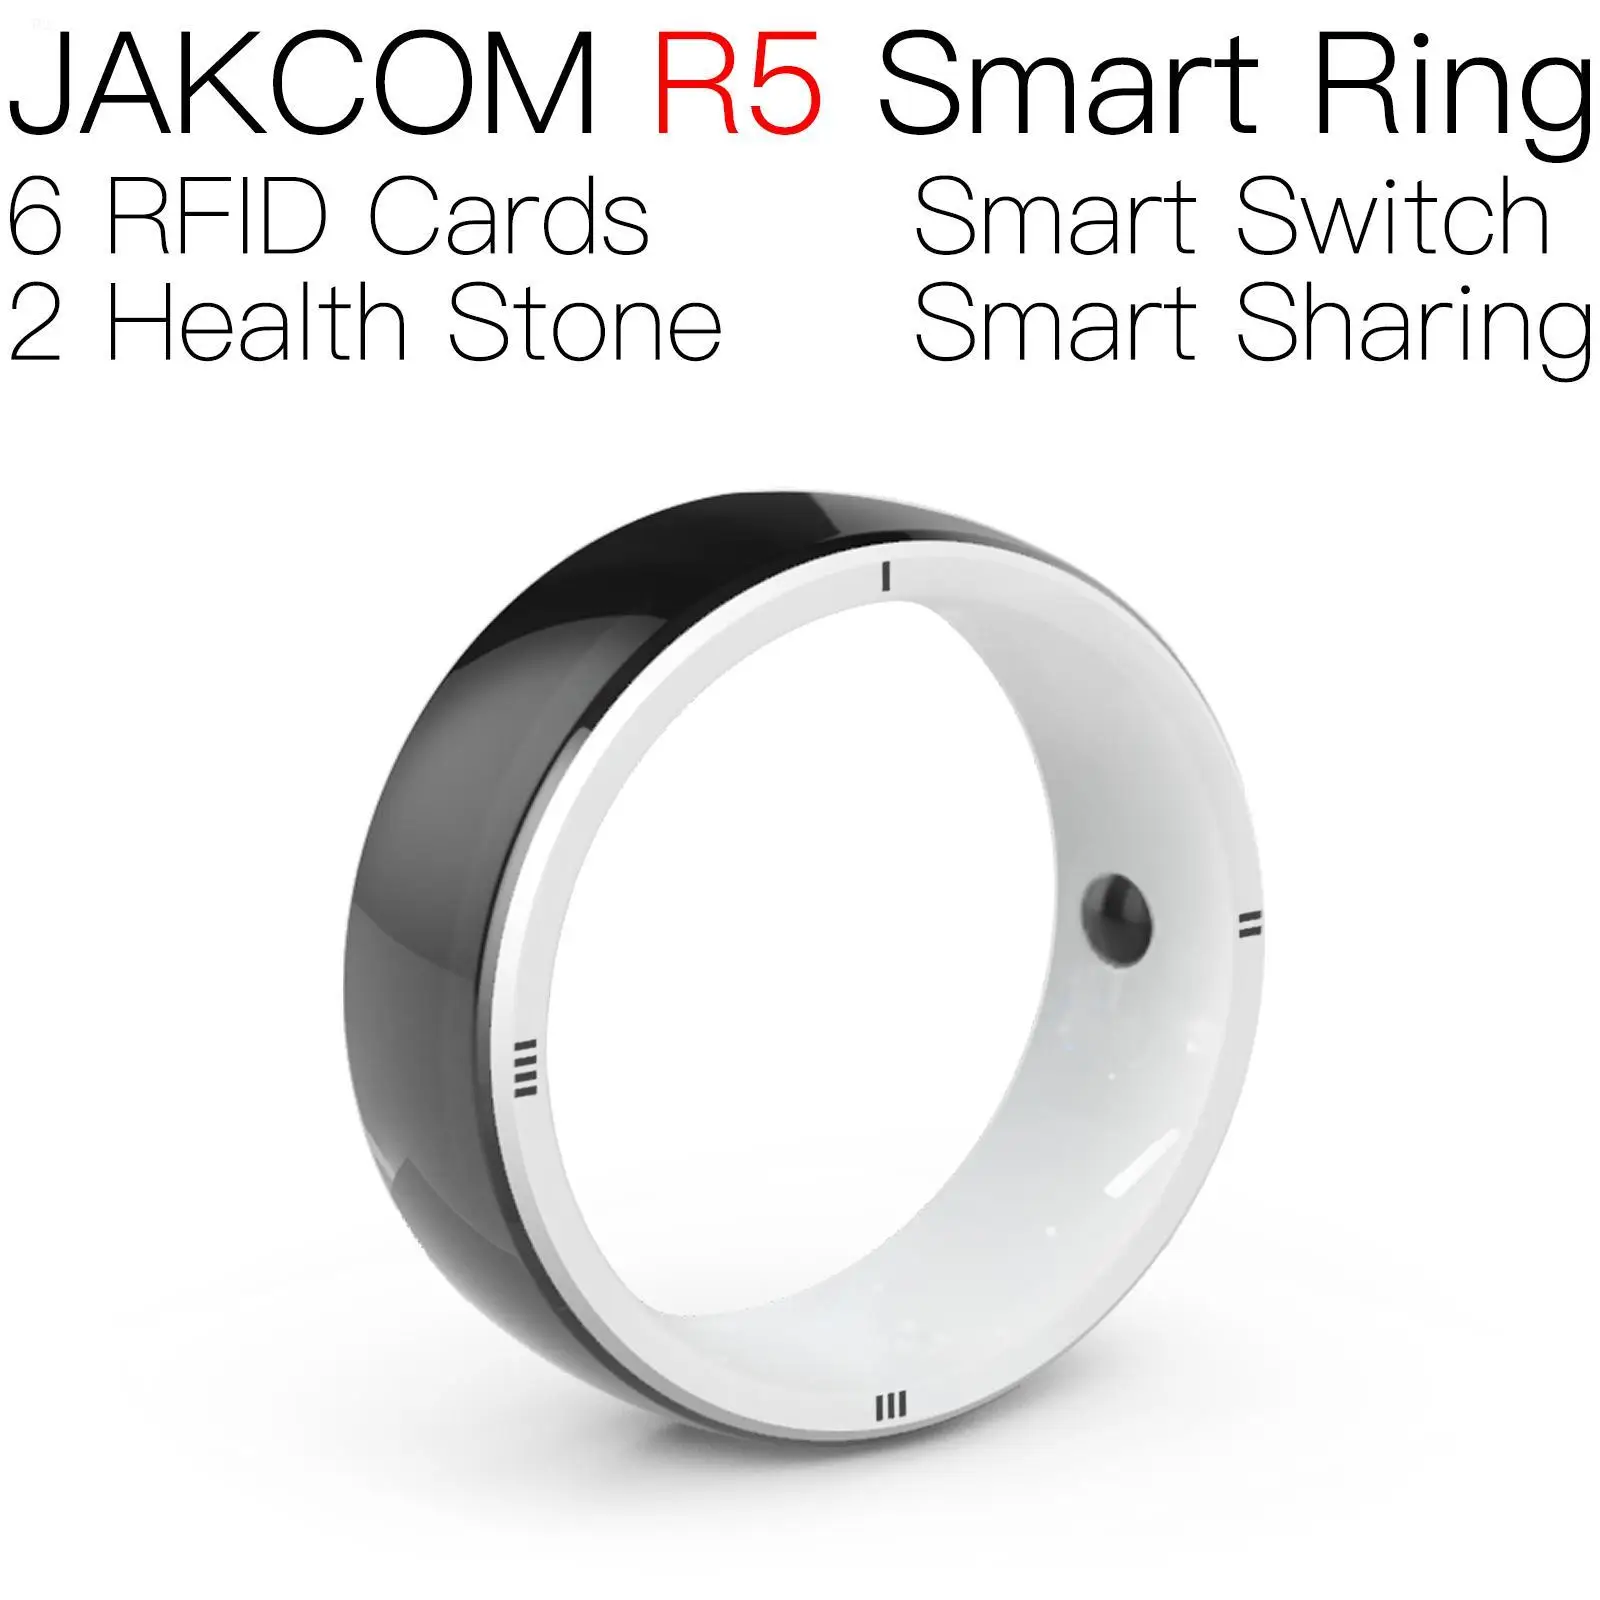 

Умное кольцо JAKCOM R5, красивое, чем идентификатор одежды, rfid 125 кГц, клон записываемых брелоков, метка с металлической поверхностью, чистые карты, чипы